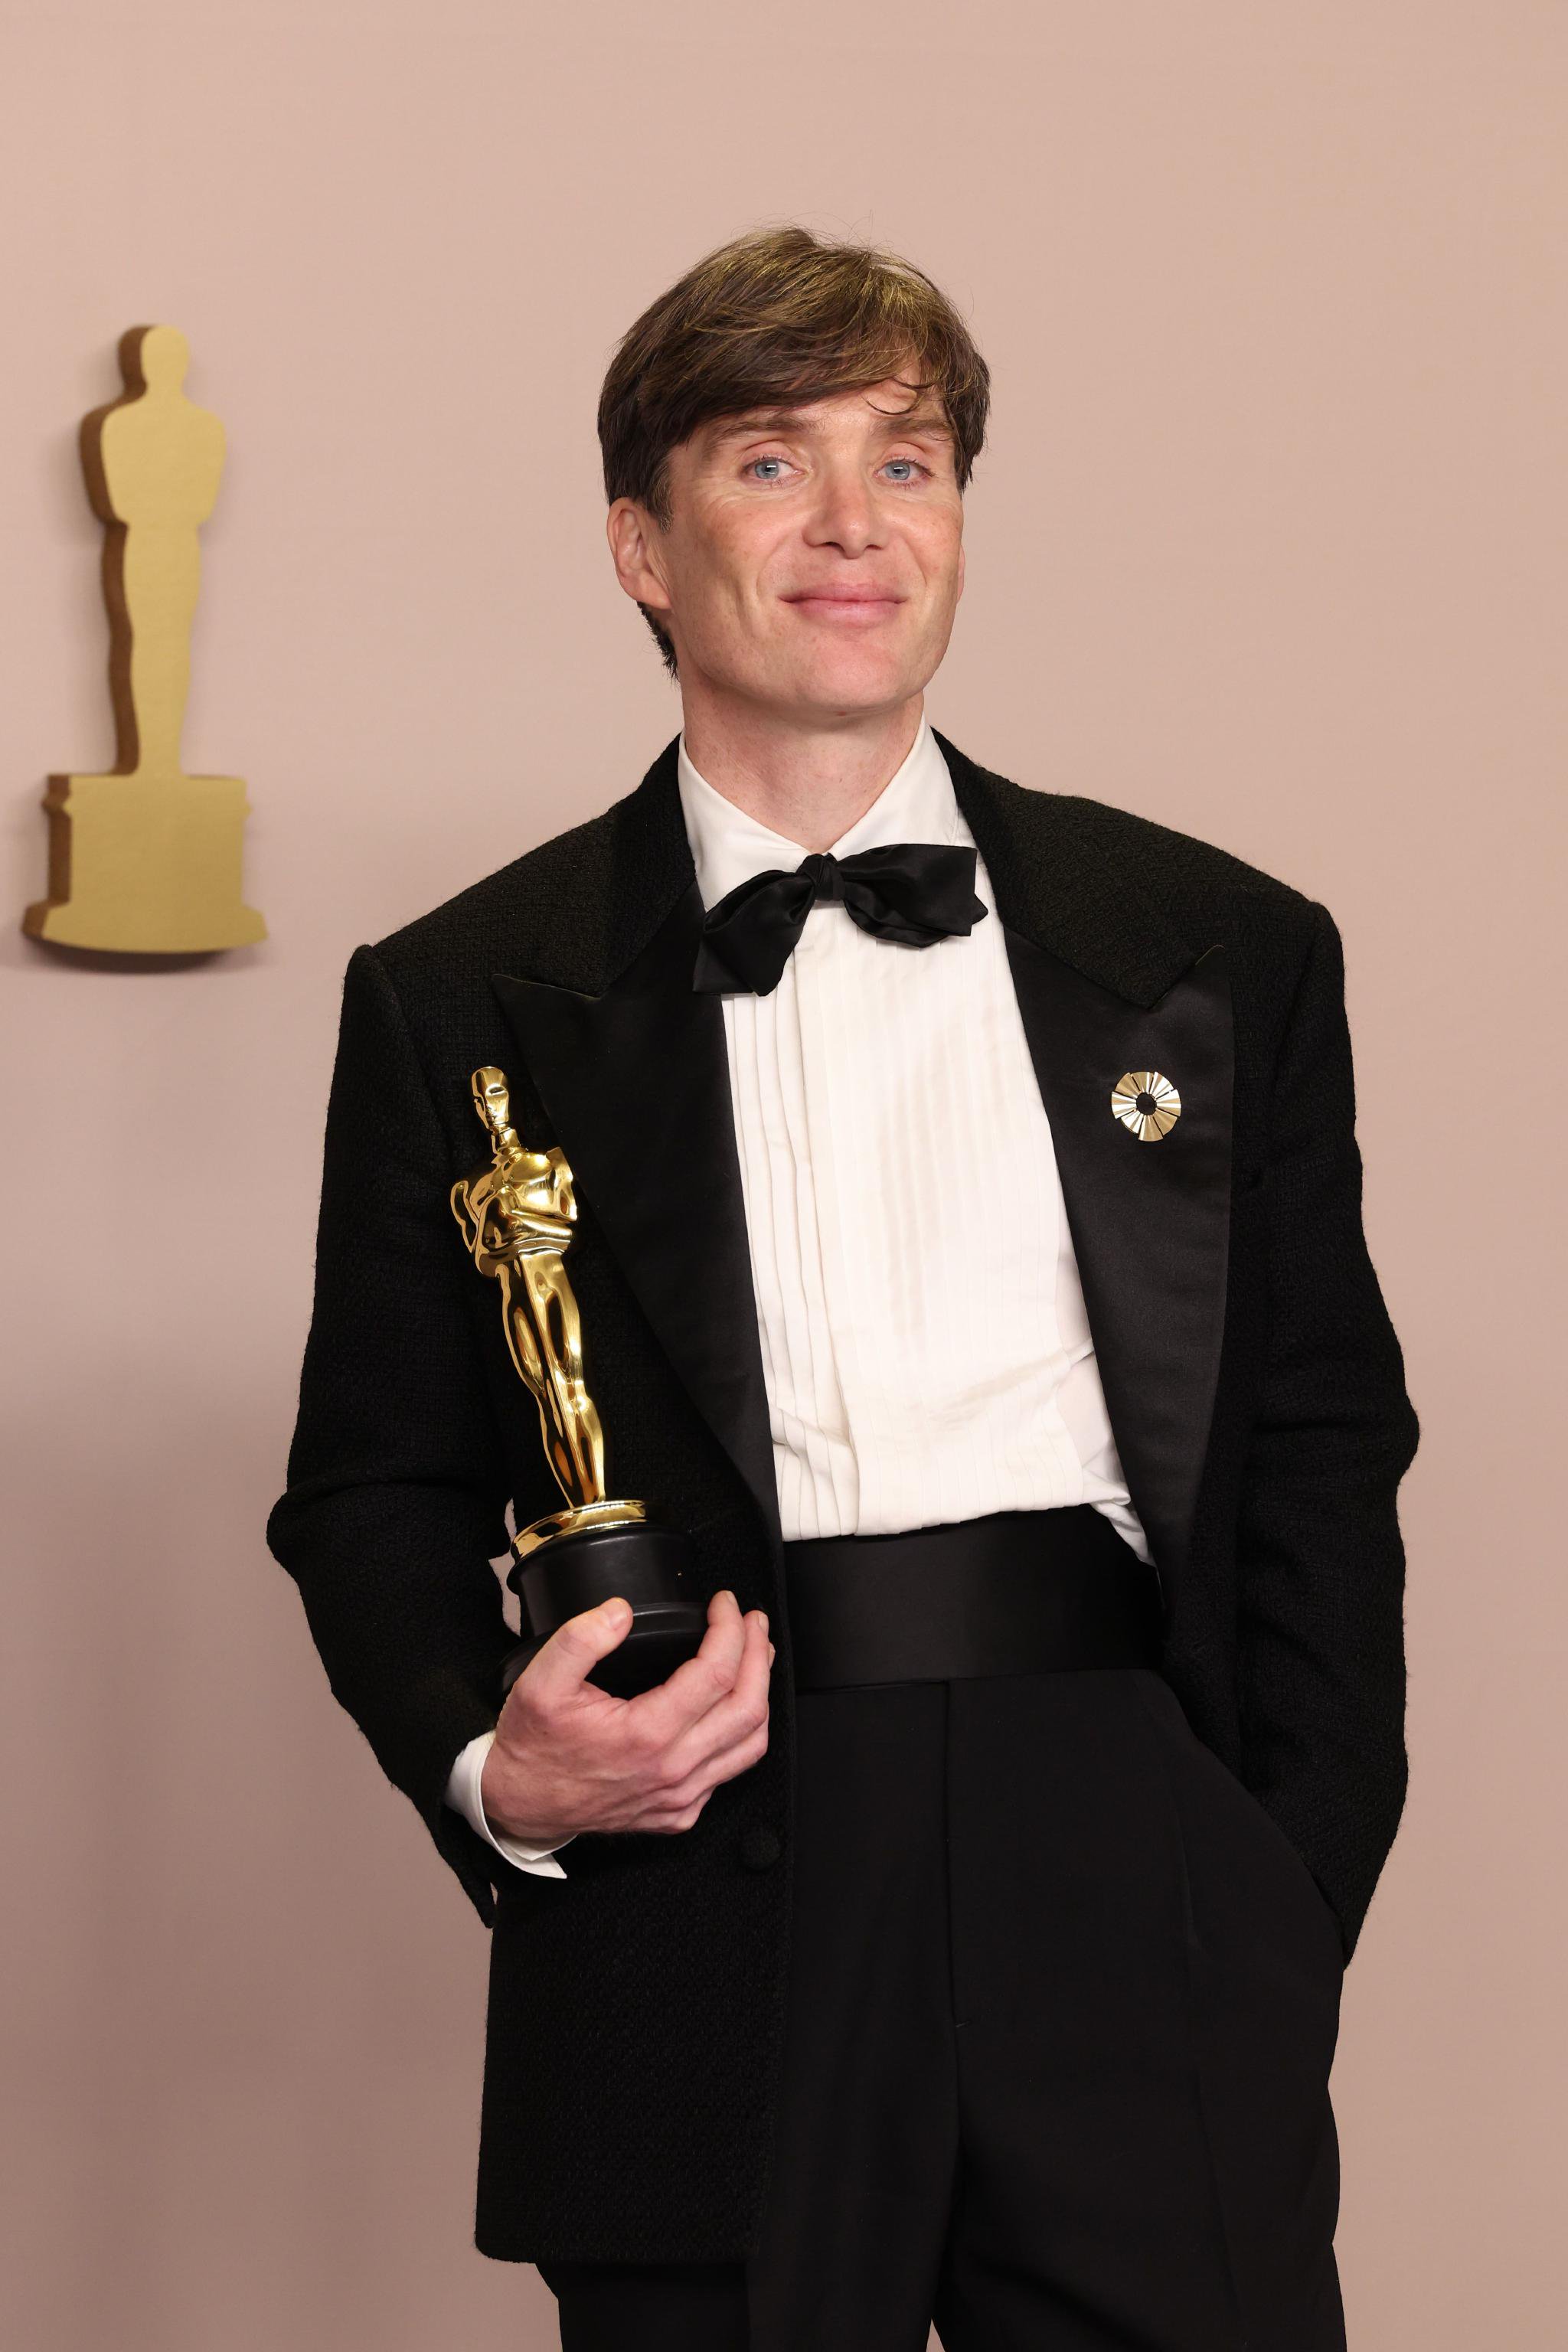 基萊恩·梅菲憑藉電影《奧本海默》獲得奧斯卡最佳男主角，這也是他首次提名該獎項。 圖/IC PHOTO